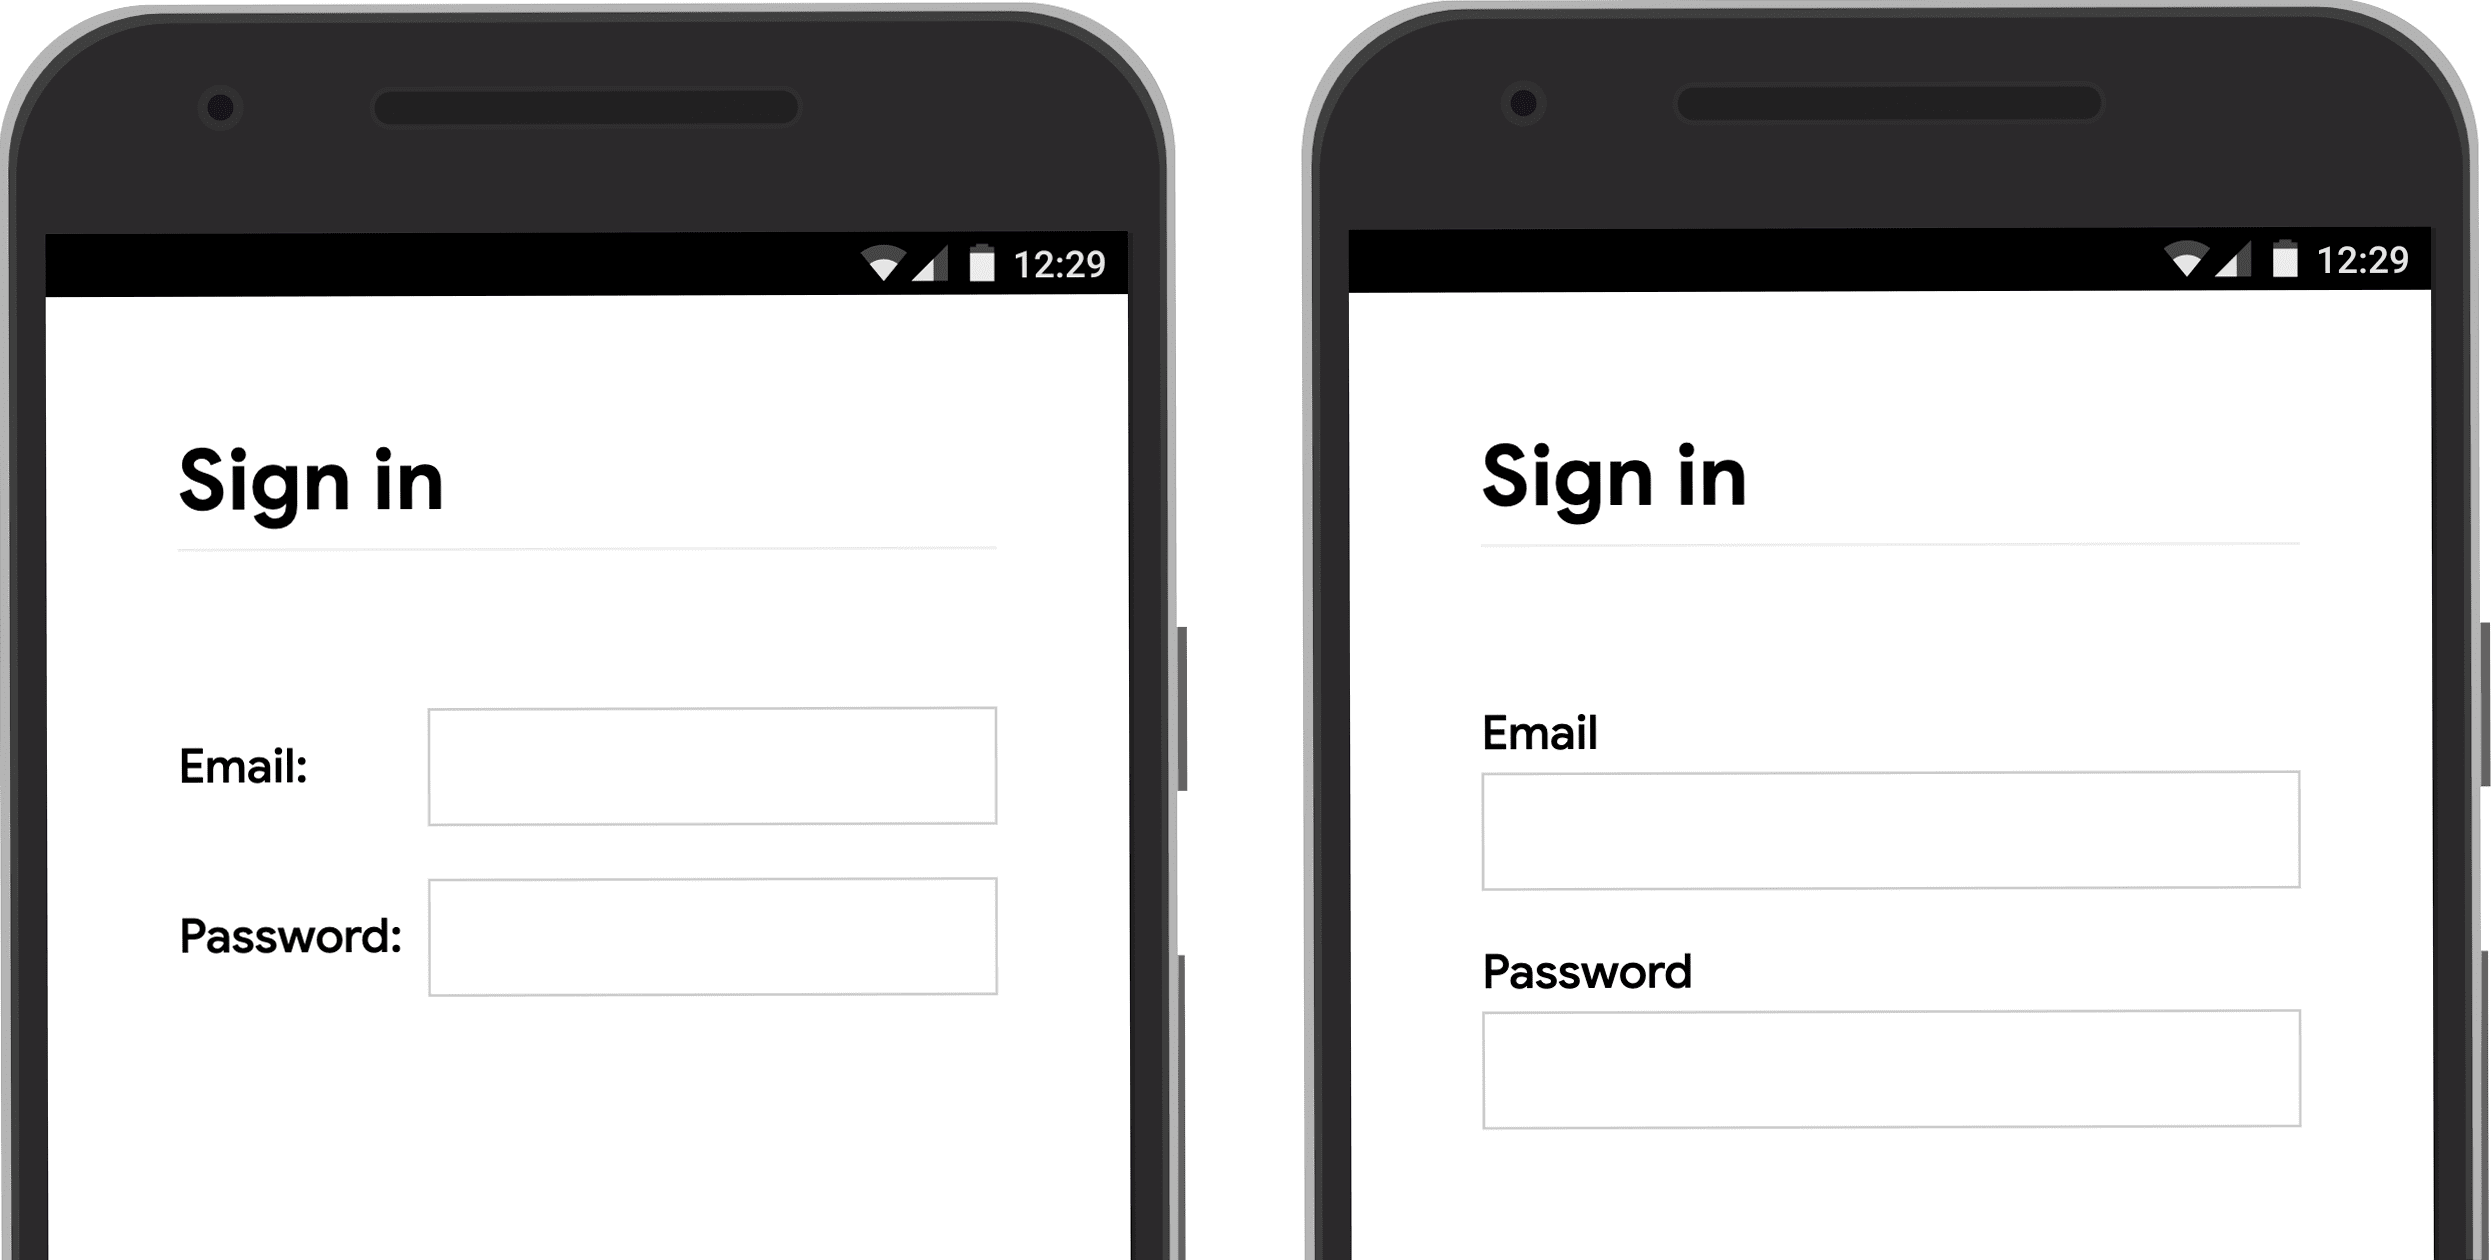 Captura de pantalla que muestra la posición de la etiqueta de entrada del formulario en el dispositivo móvil: junto a la entrada y arriba de la entrada